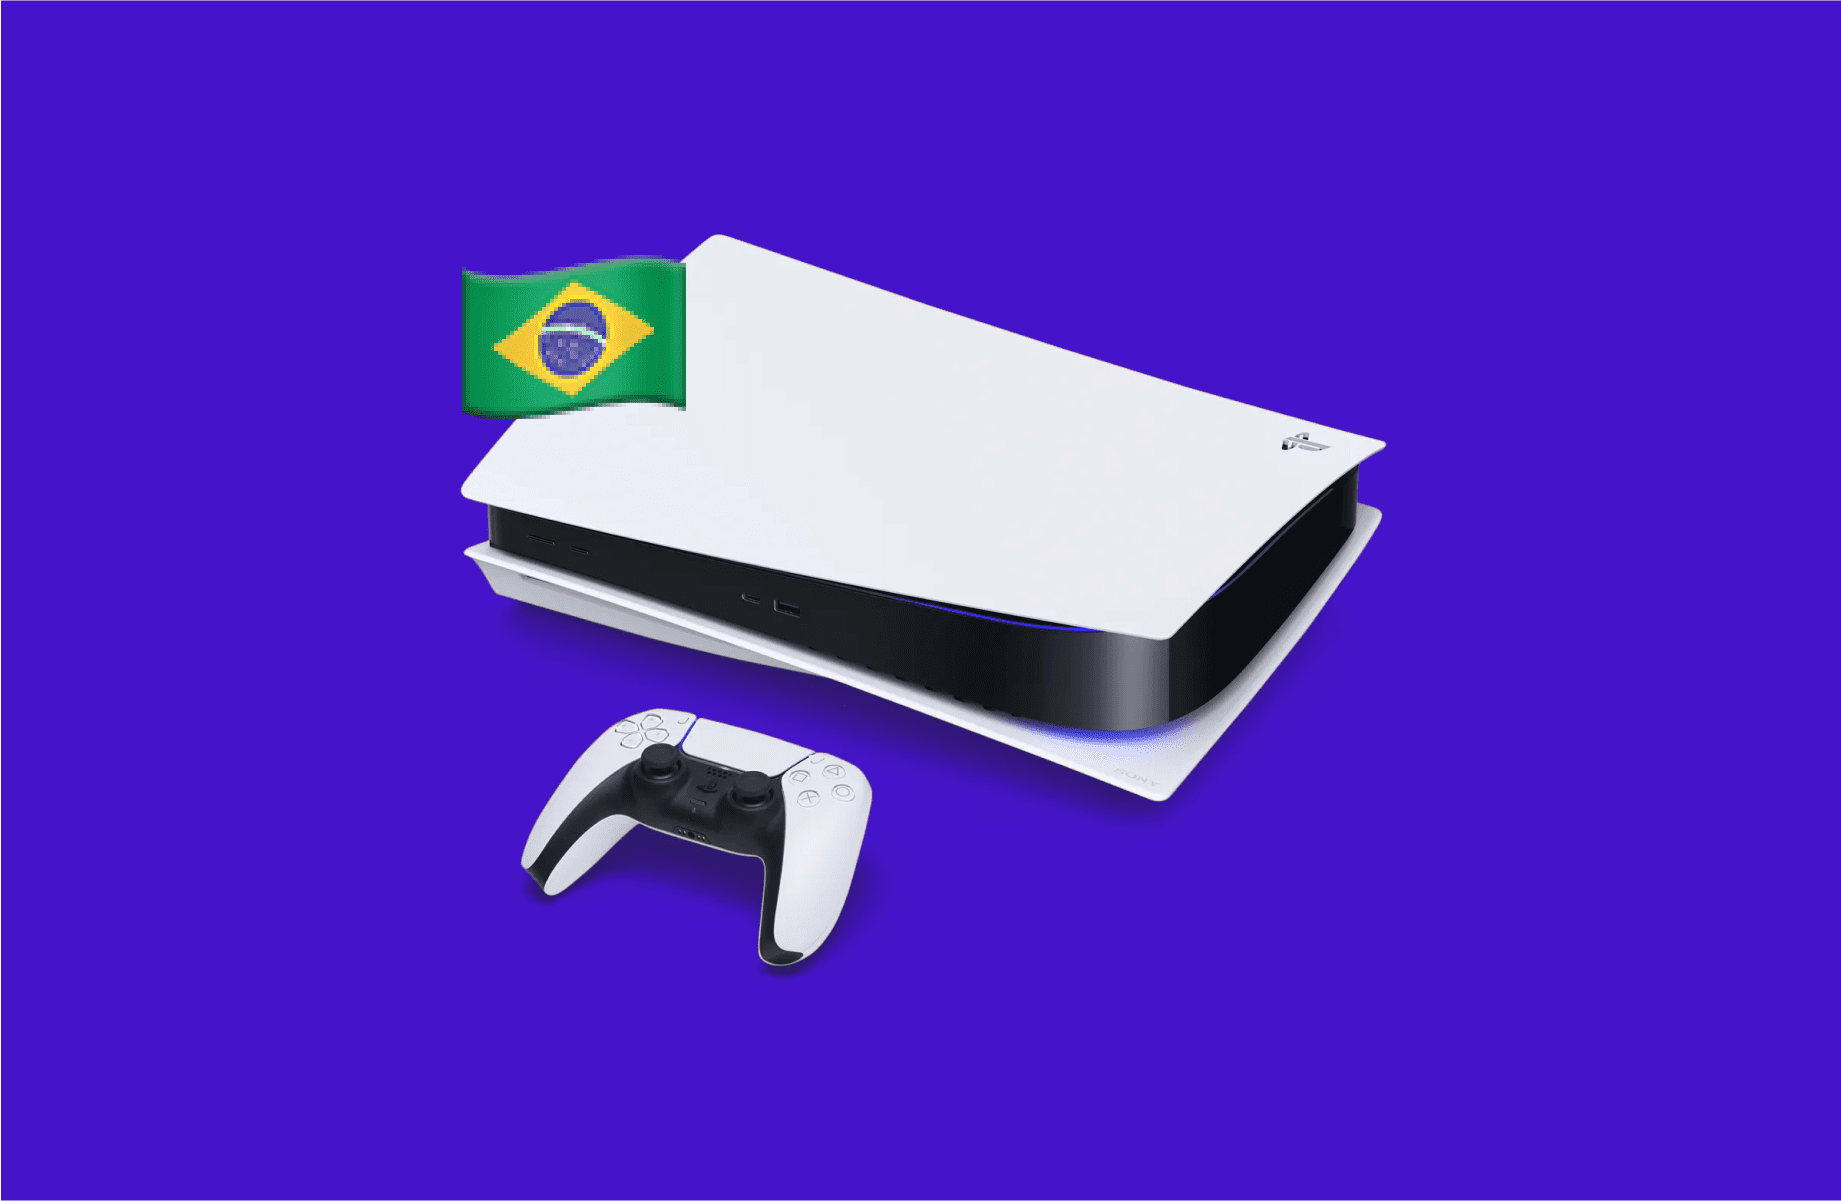 Sony afirma que o PlayStation 5 NÃO deve sofrer aumento de preço no Brasil